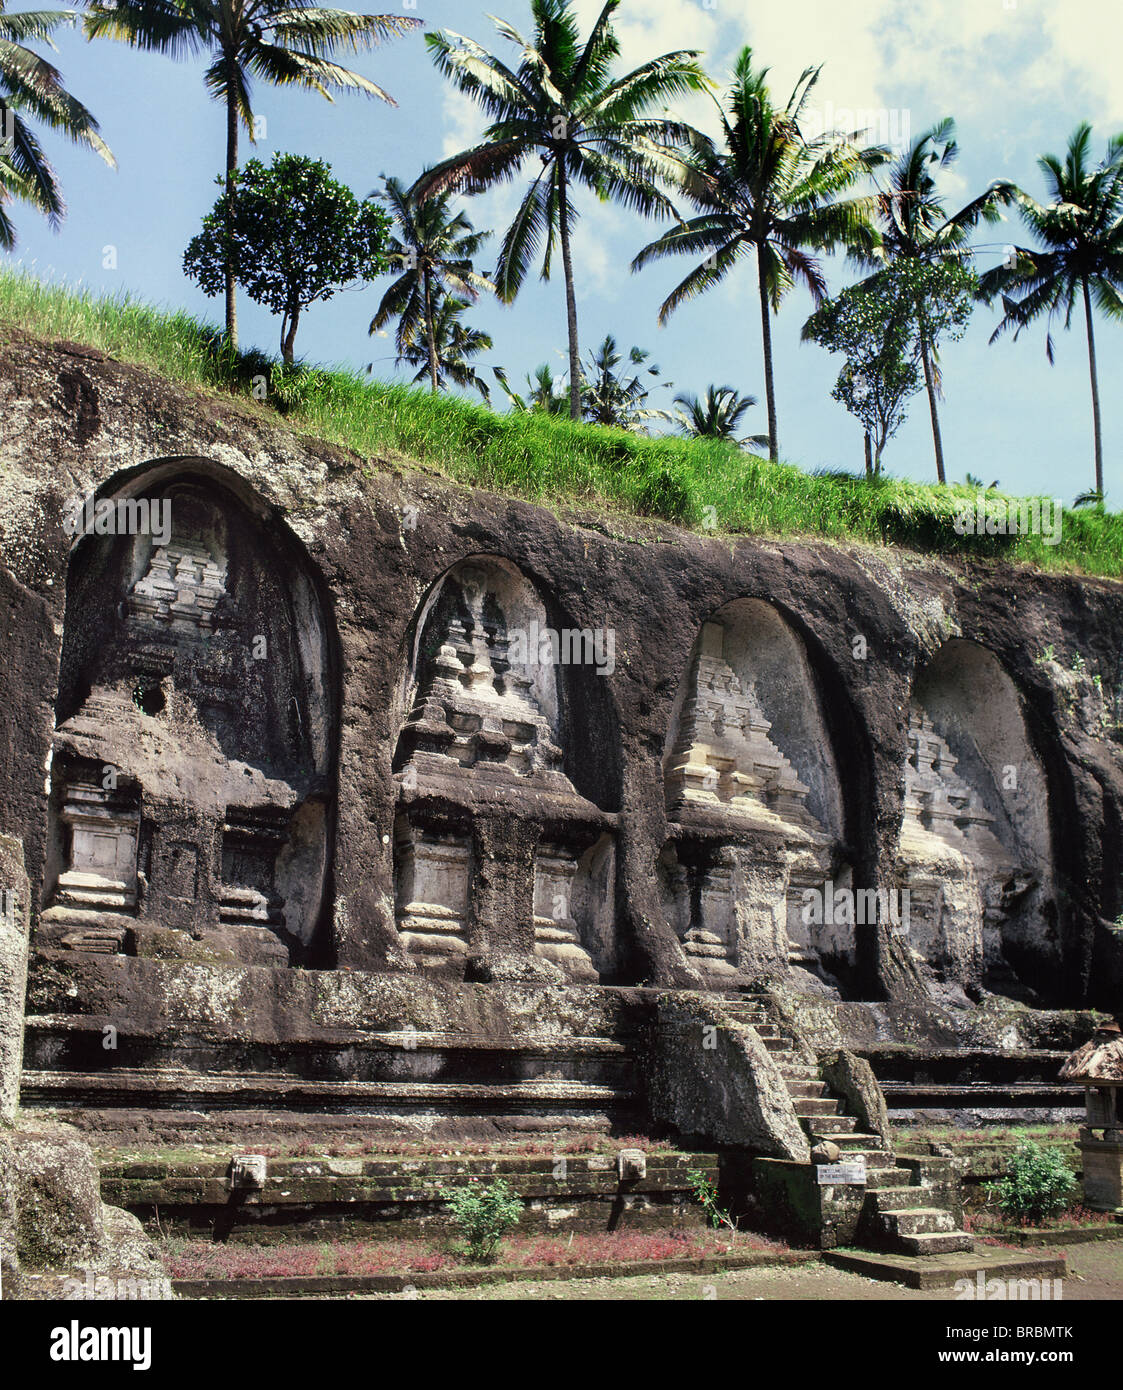 Beerdigung-Tempel in Fels gehauenen am Gunung Kawi, ein Komplex von königlichen Denkmäler aus 11. Jahrhundert, Bali, Indonesien Stockfoto